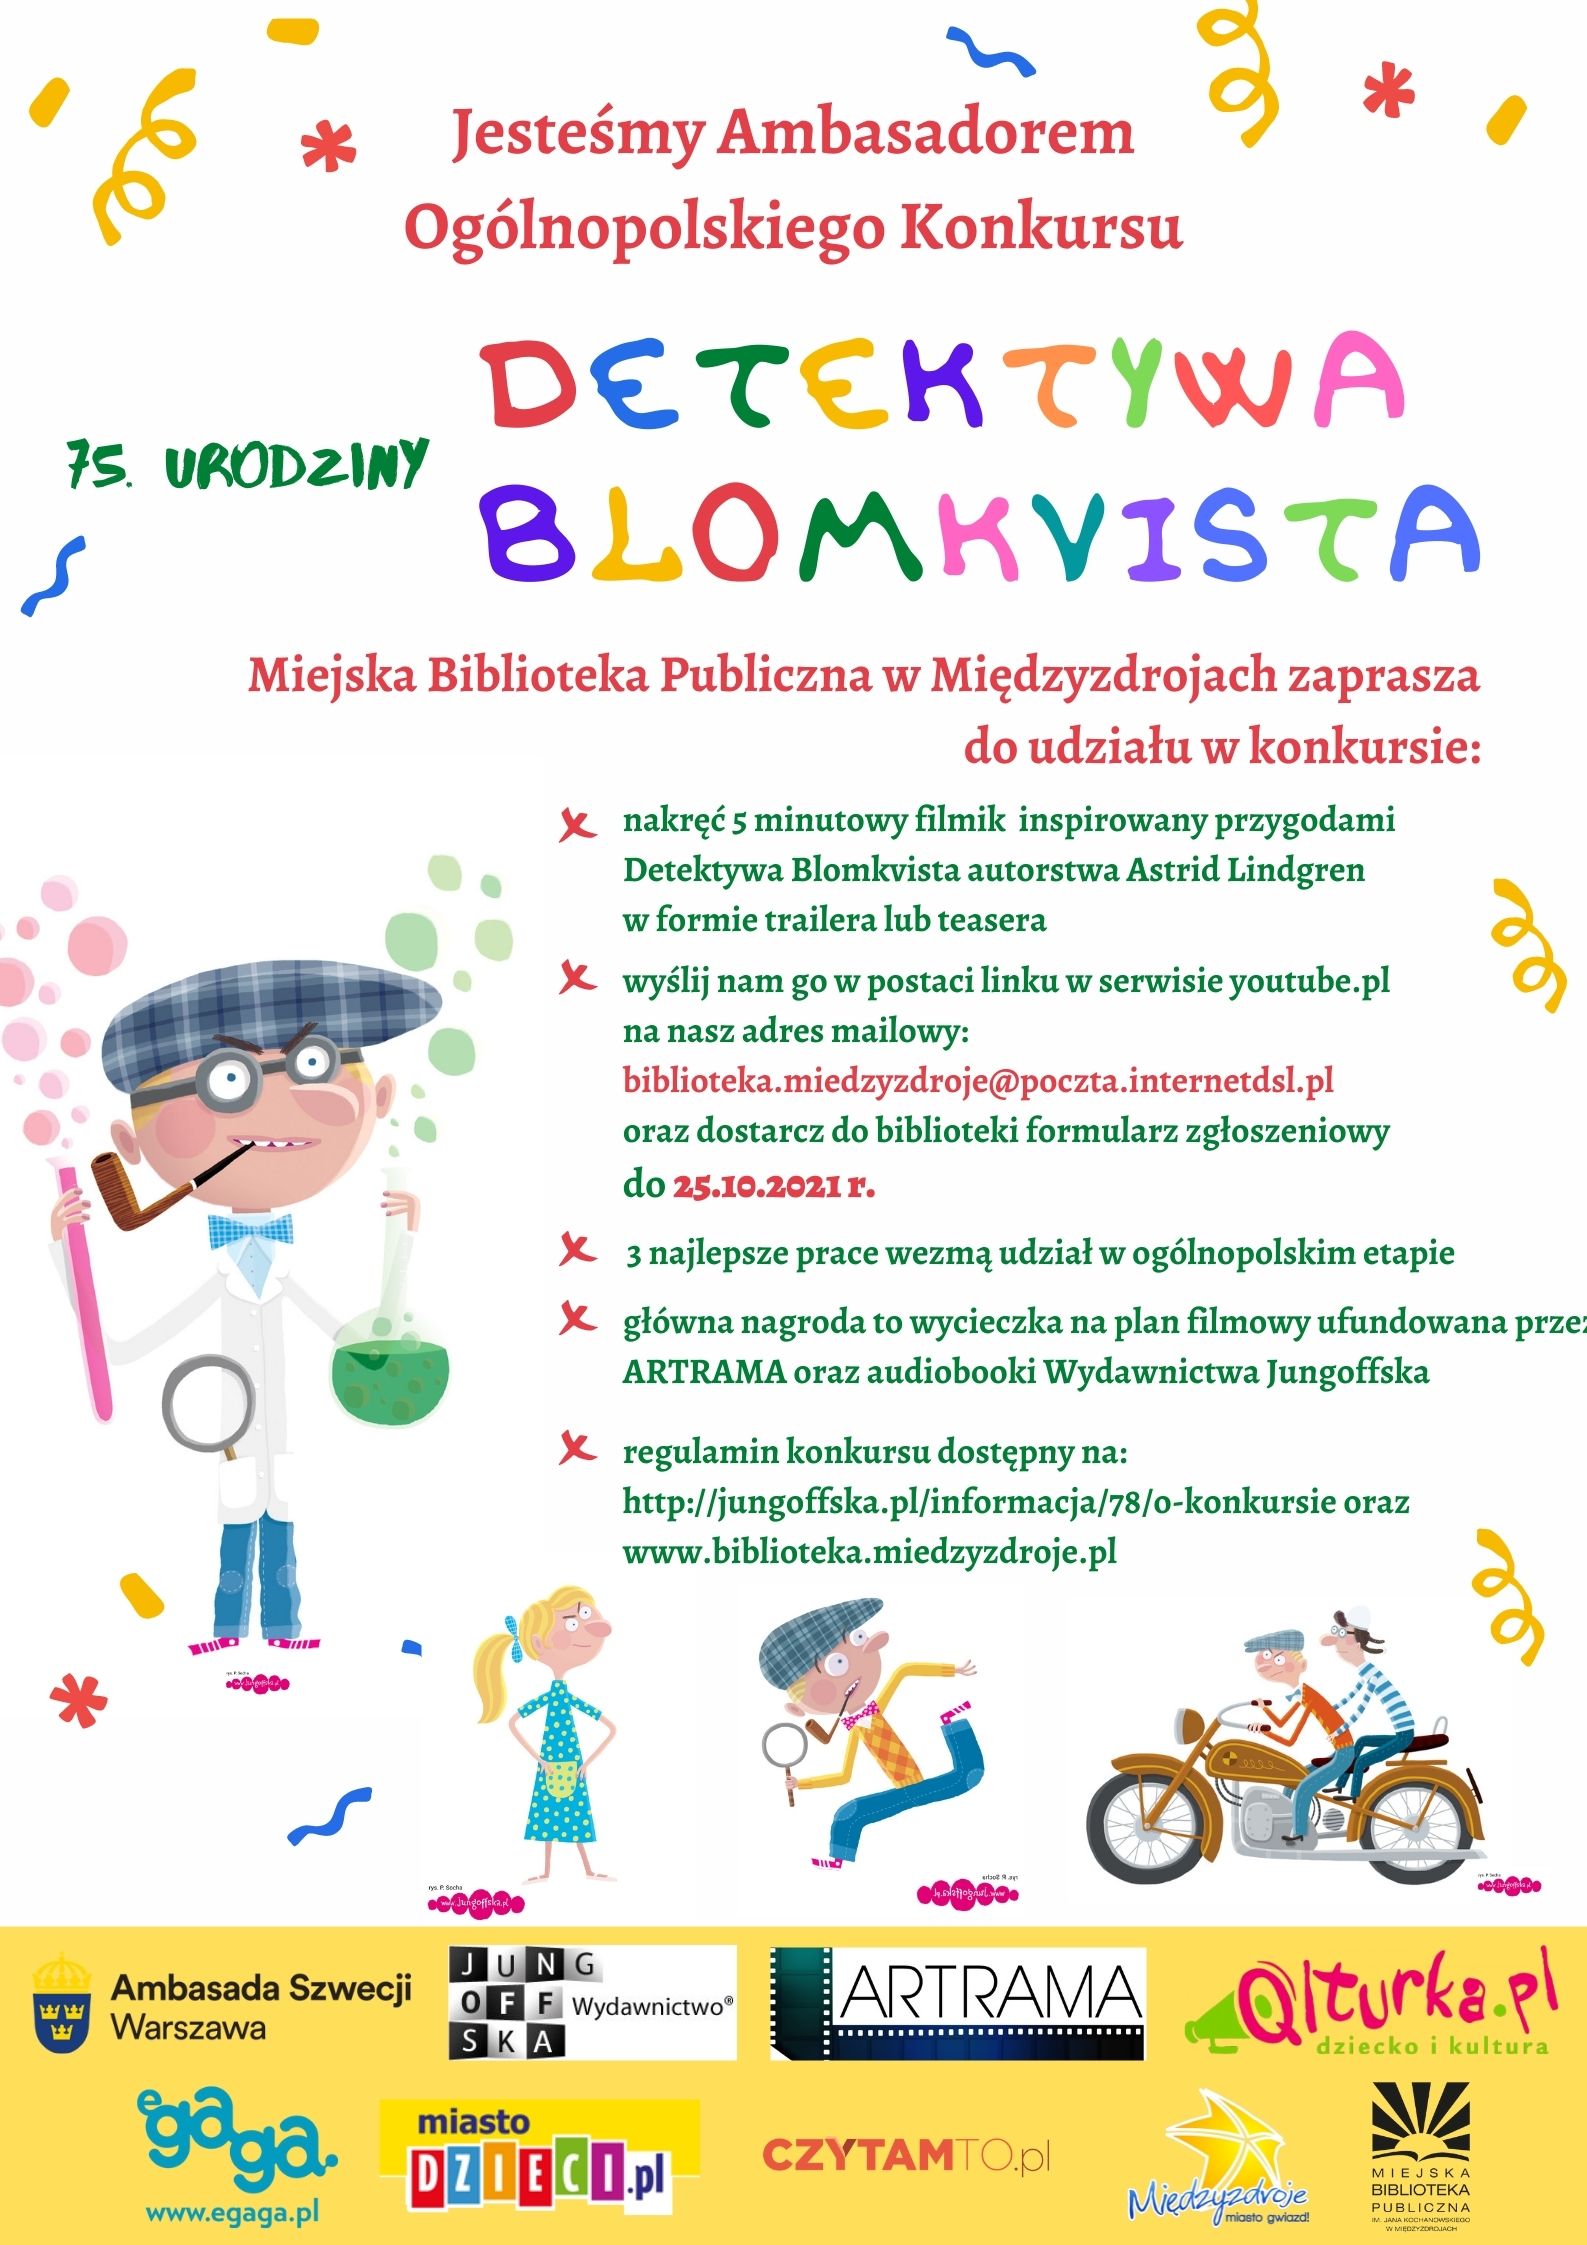 Ogólnopolski Konkurs  „75. urodziny Detektywa Blomkvista” 25 października 2021 r.